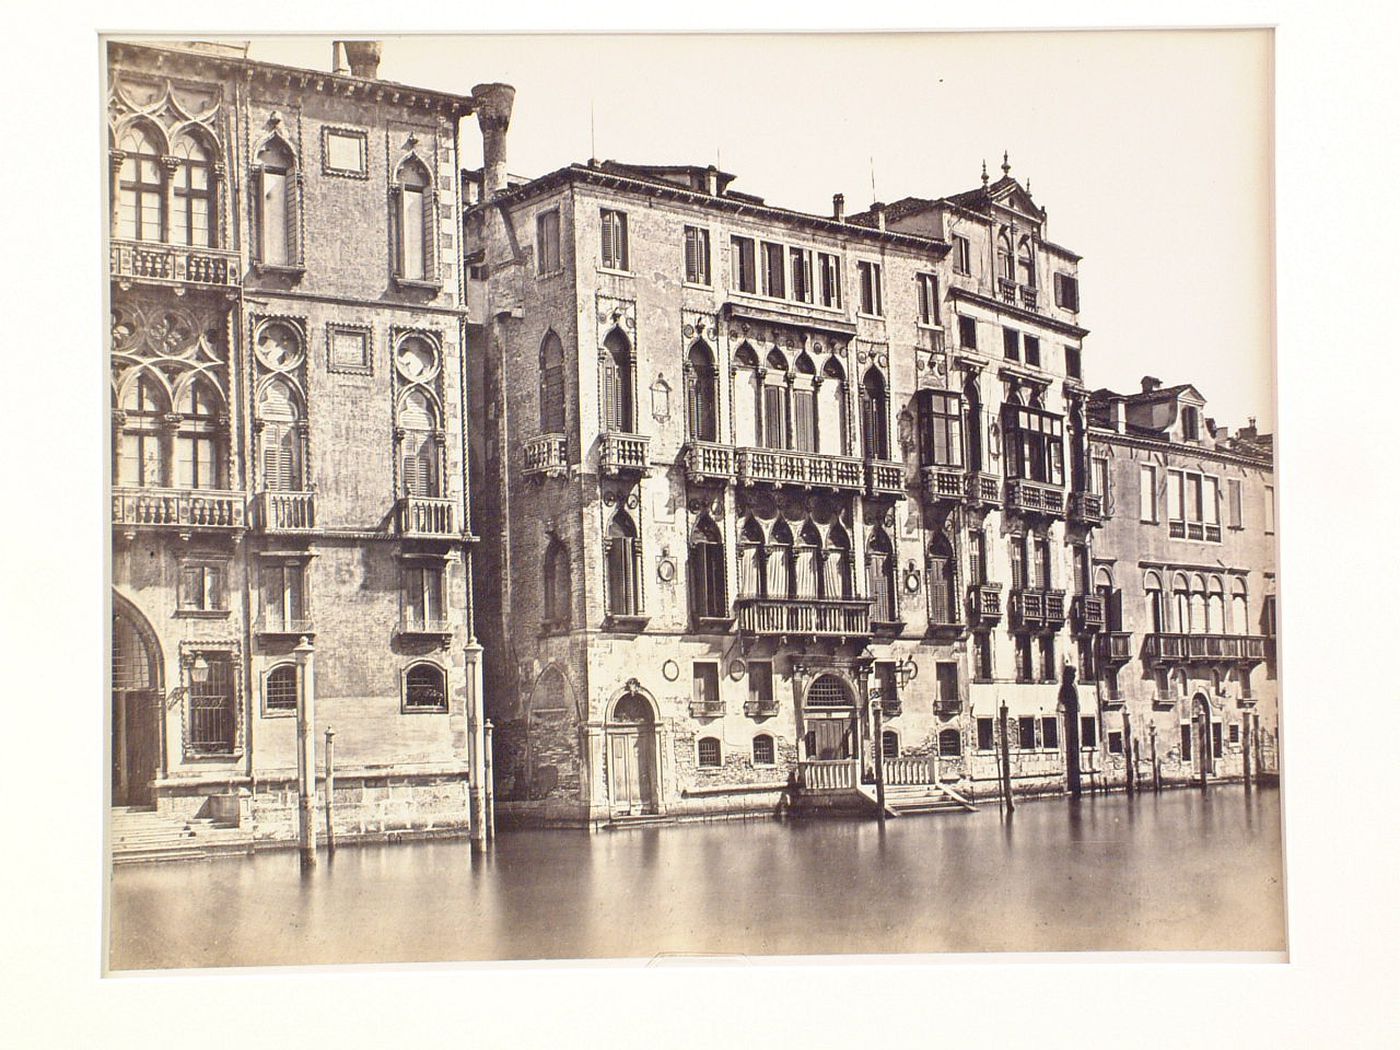 Palazzo Barbaro, Venice, Italy